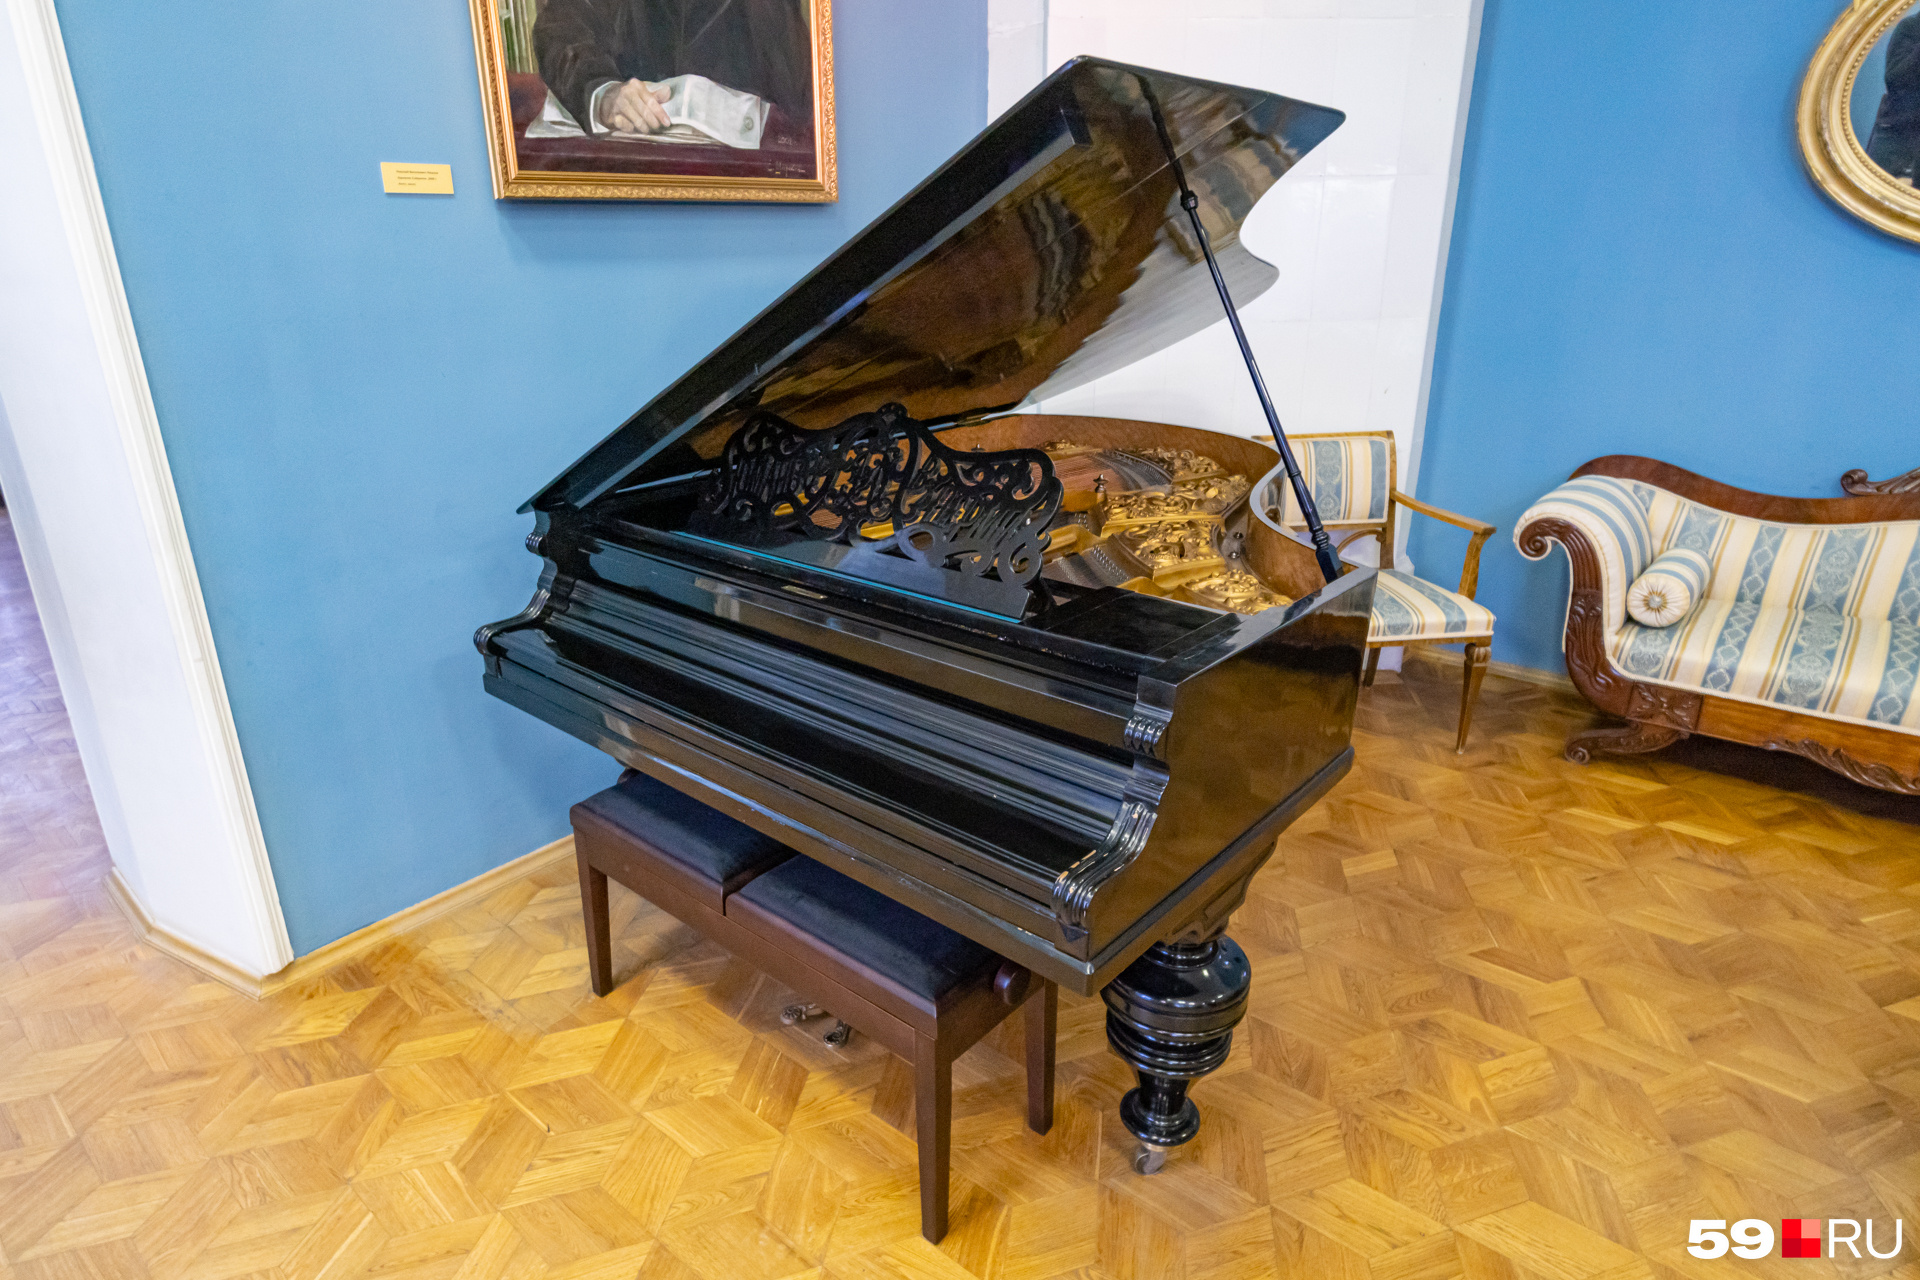 Роялю фабрики Дмитрия Юманова выделено особое место в гостиной Дома Мешкова